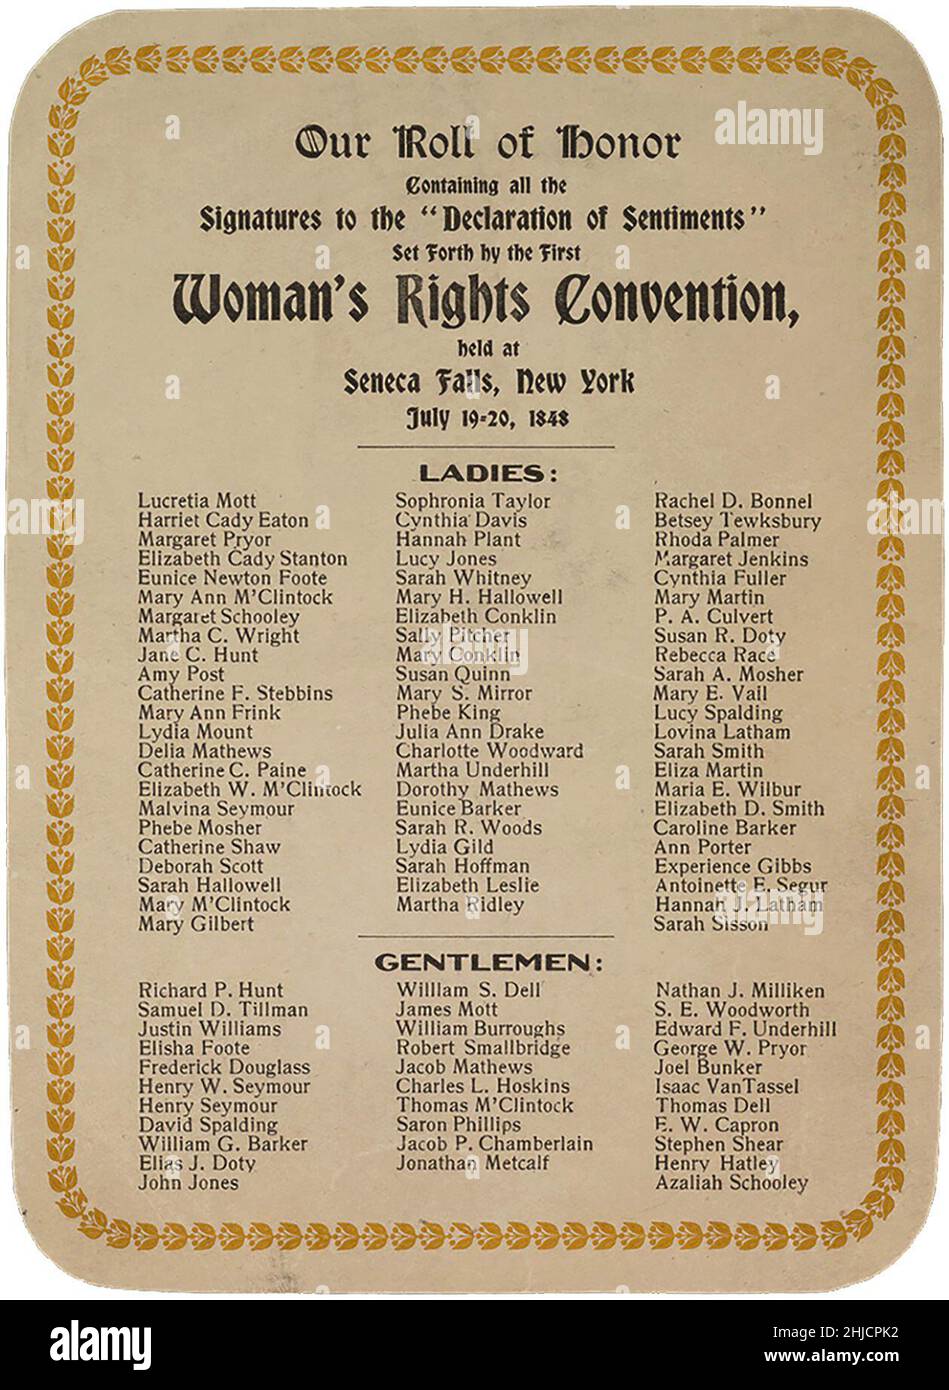 Elenco delle firme della Dichiarazione dei sentimenti presentata dalla prima Convenzione sui diritti della donna negli Stati Uniti, tenutasi a Seneca Falls, New York, dal 19 al 20 luglio 1848. Carta rilasciata nel 1908 per una celebrazione del 50th° anniversario. Foto Stock